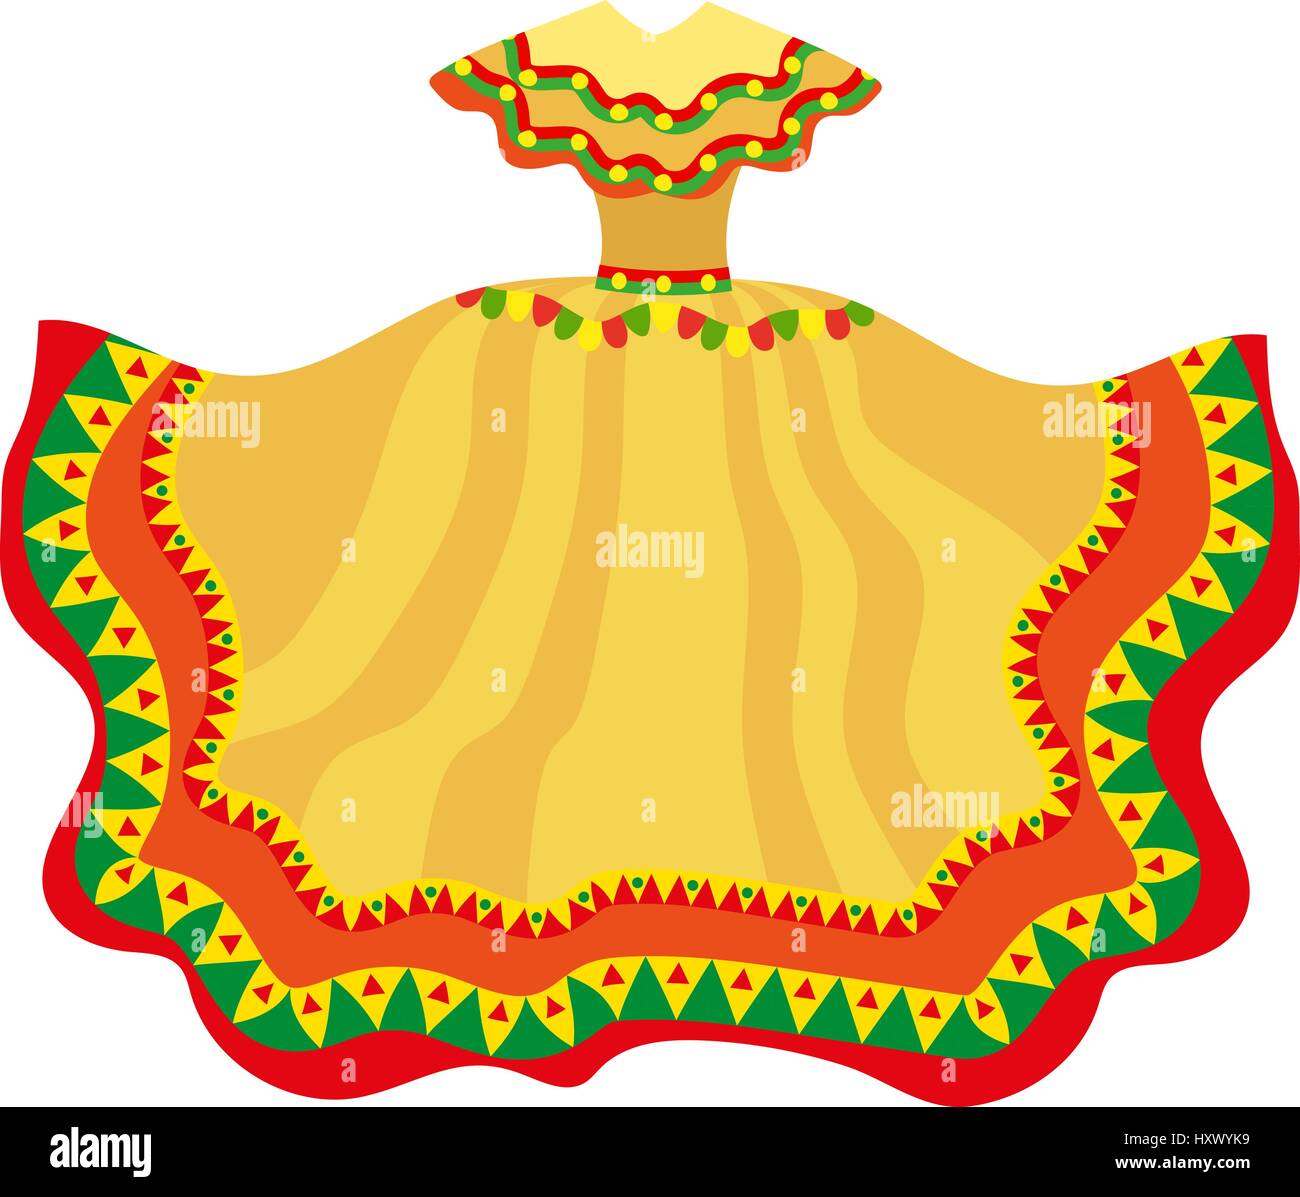 Mexikanisches Kleid Symbol, flachen Stil. Traditionelle mexikanische weibliche Kleidung. Isoliert auf weißem Hintergrund. Vektor-Illustration, Clip-Art. Stock Vektor